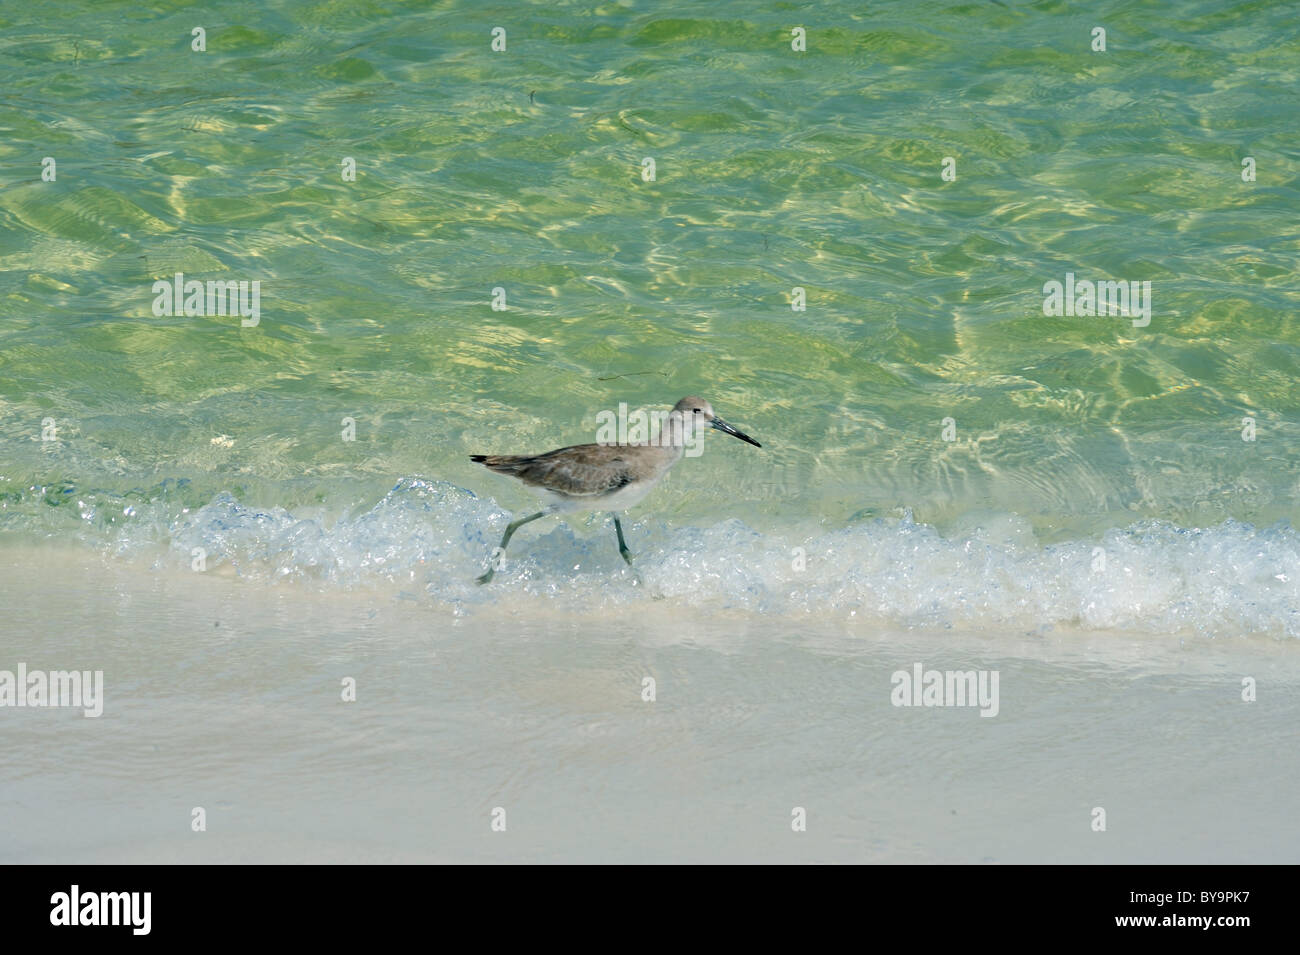 La costa de arena blanca de la costa del golfo de Florida dispone de agua clara variando en color de azul índigo al turquesa Foto de stock